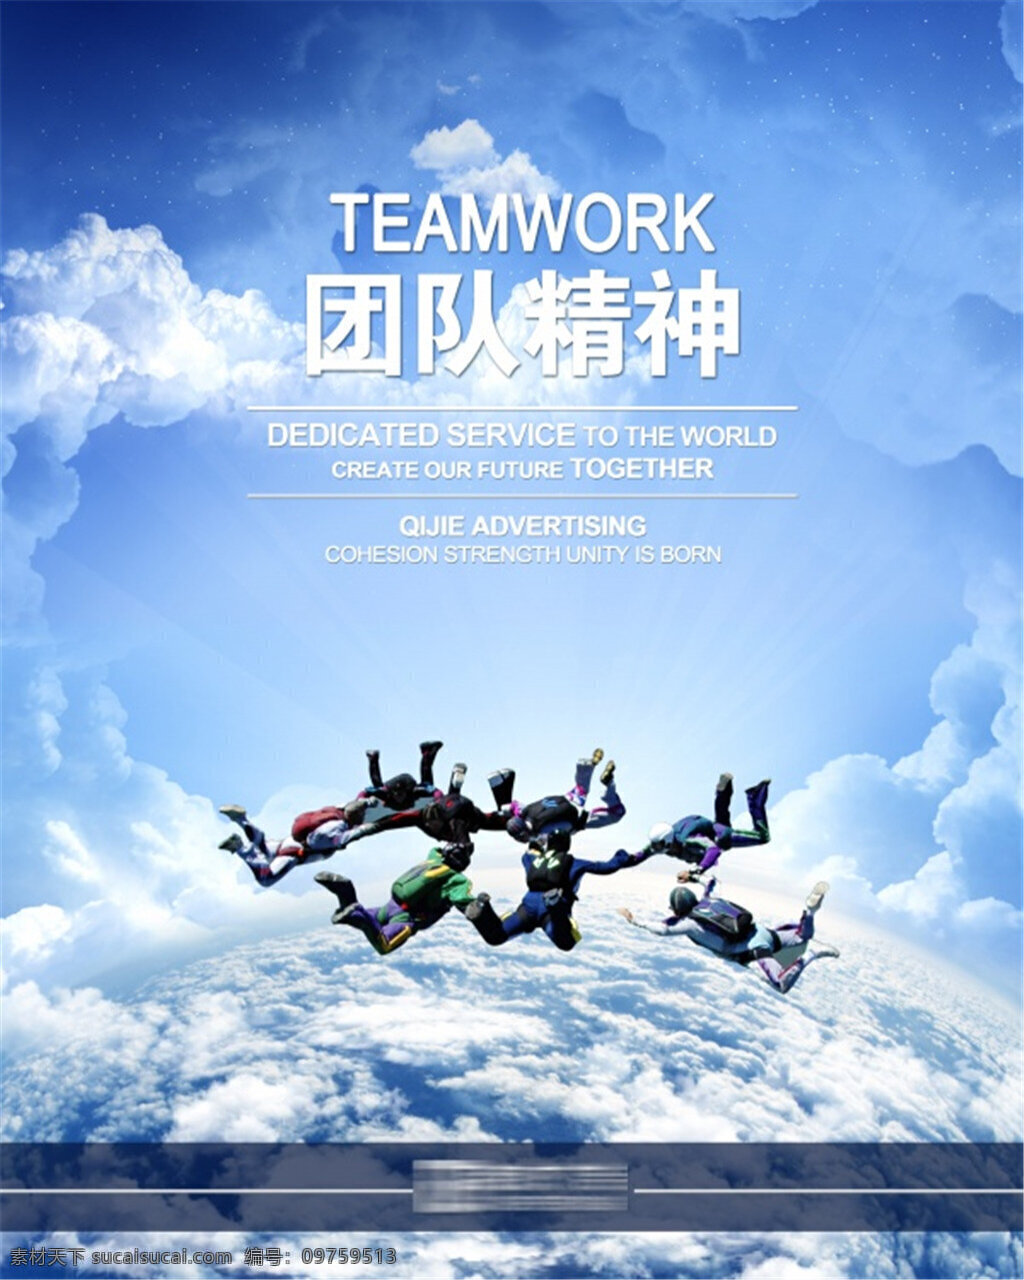 企业 团队 文化 企业文化 跳跃 蓝天白云 海报下载 个性 海报 创意海报设计 蓝色